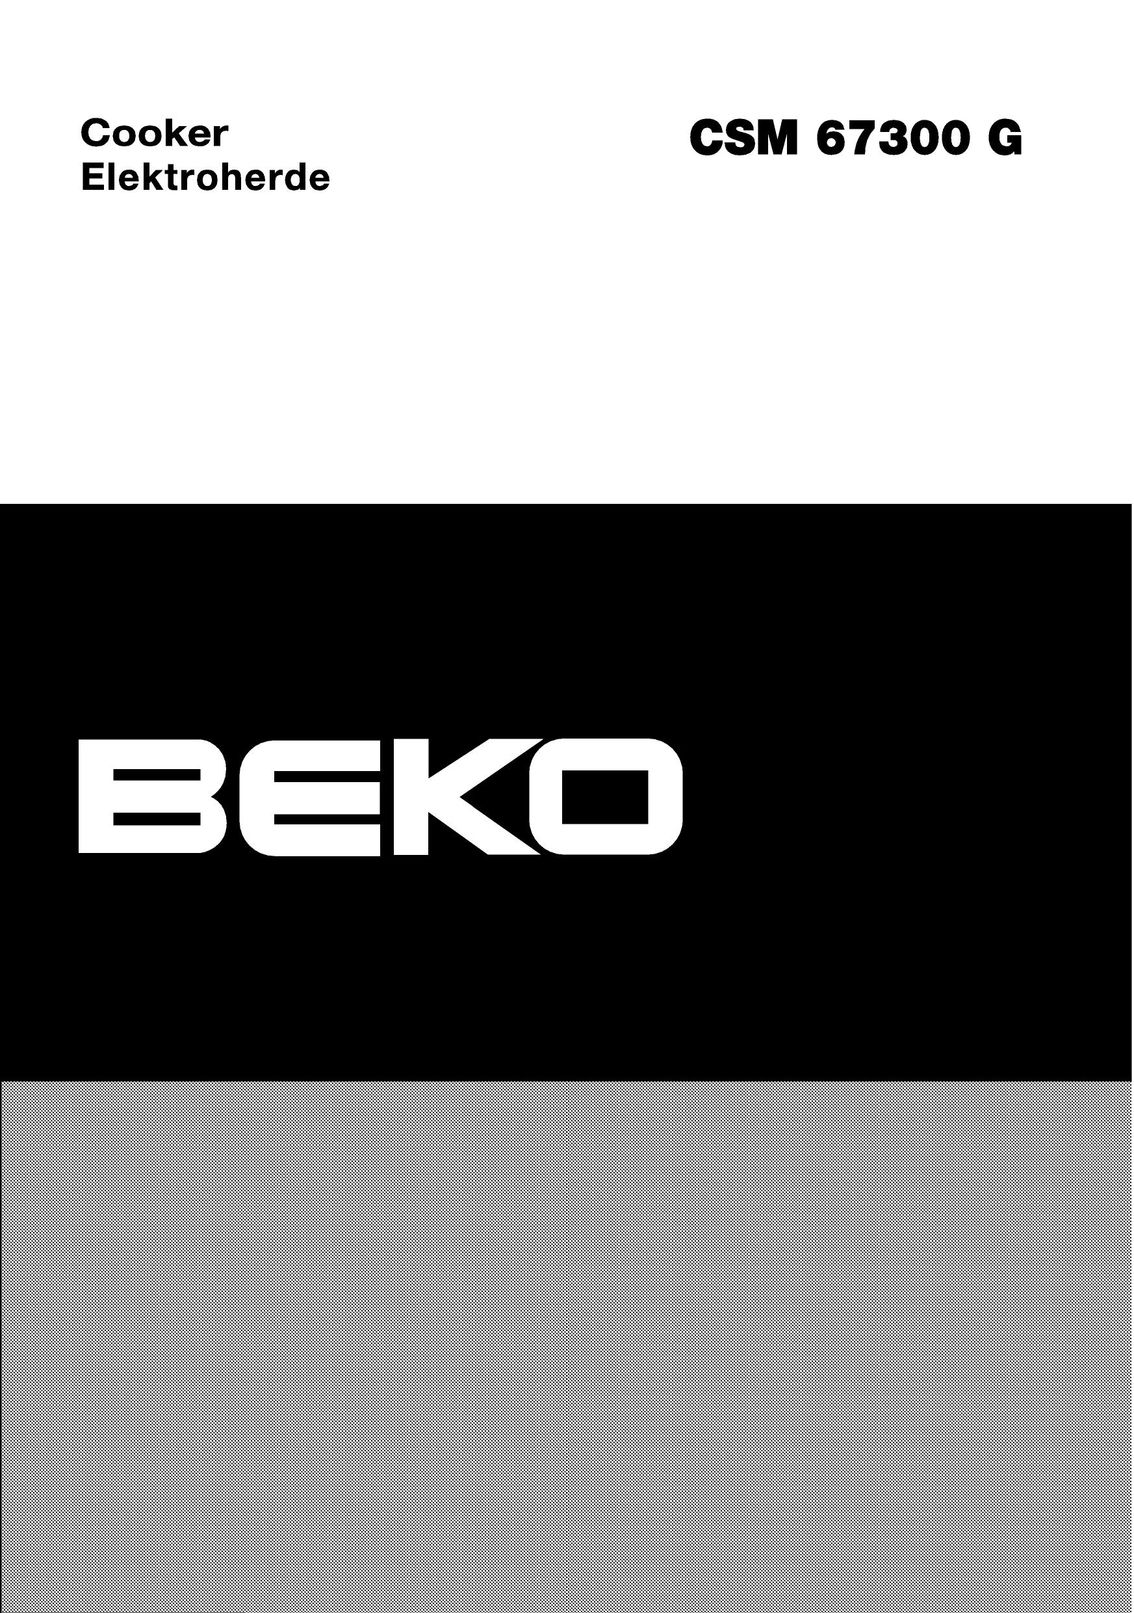 Beko CSM 67300 G Cooktop User Manual